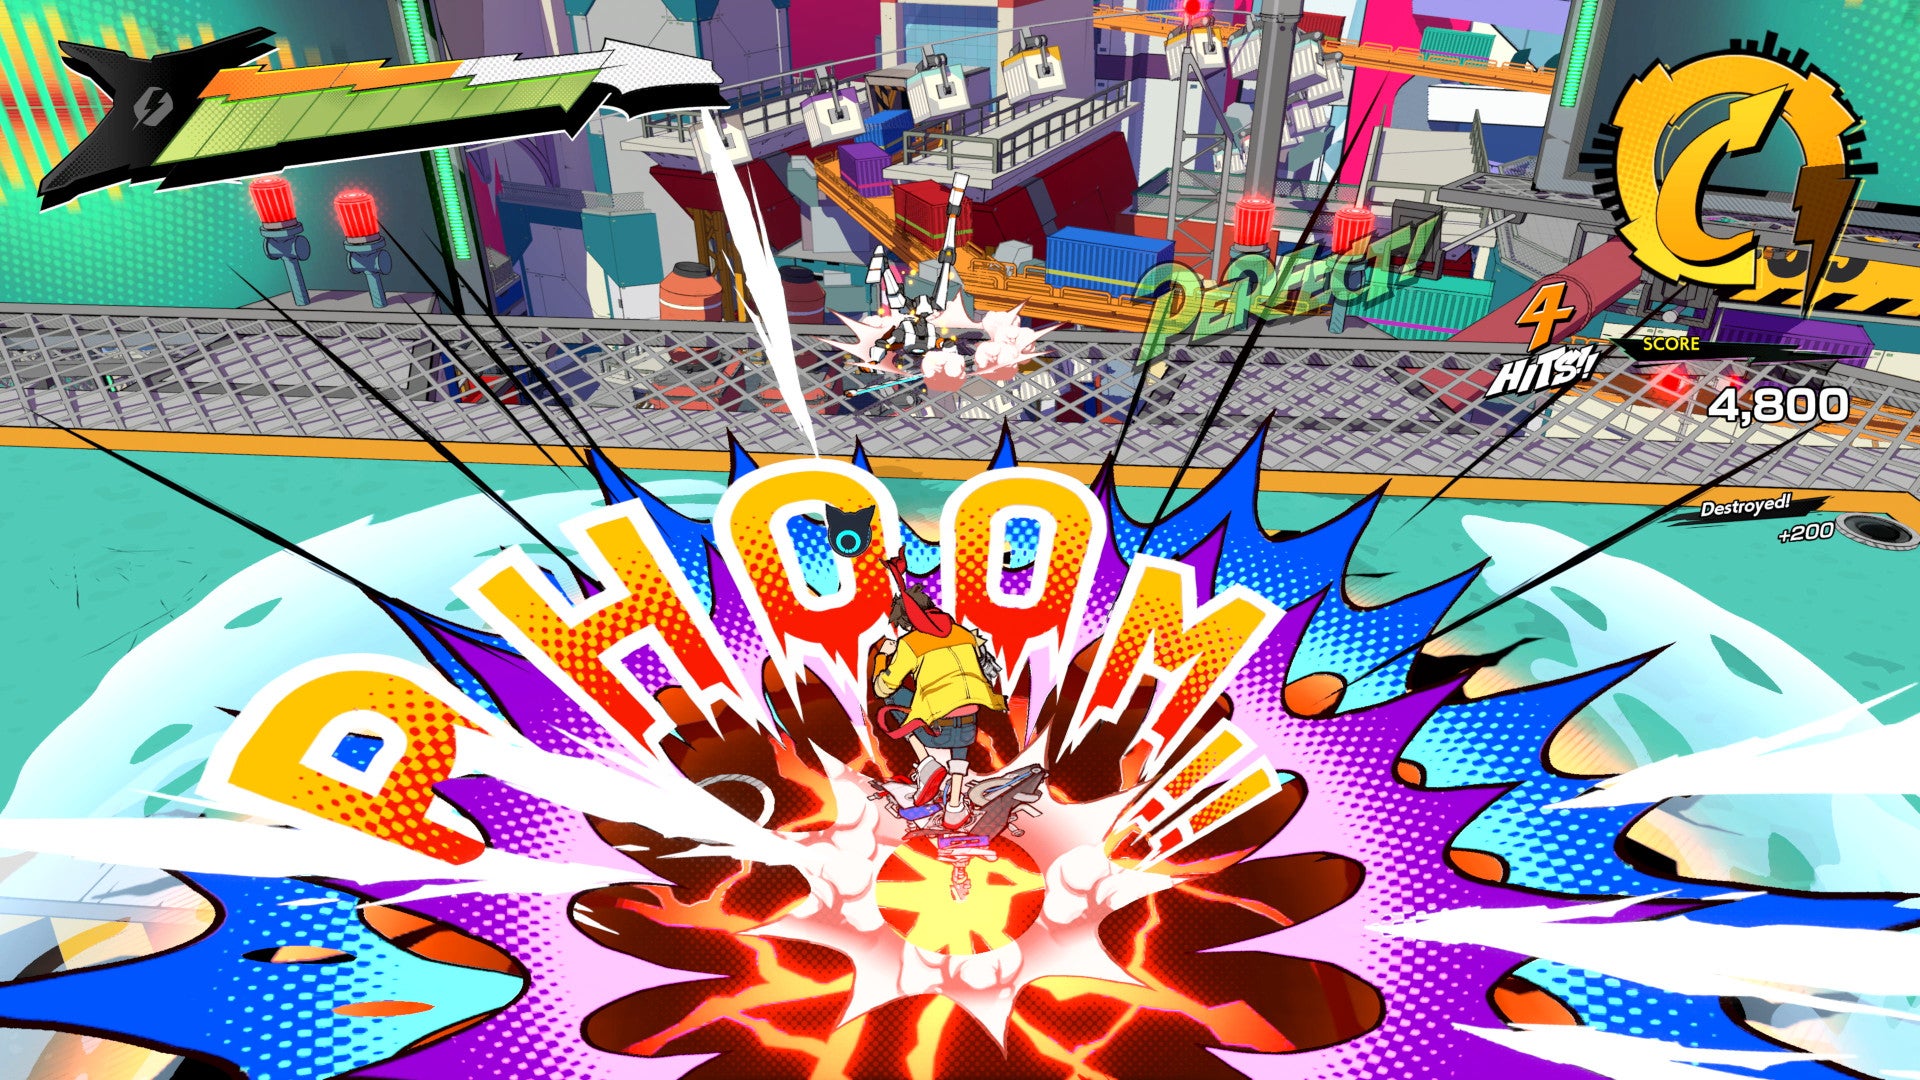 A daring ground attack in a screenshot from Hi-Fi Rush.